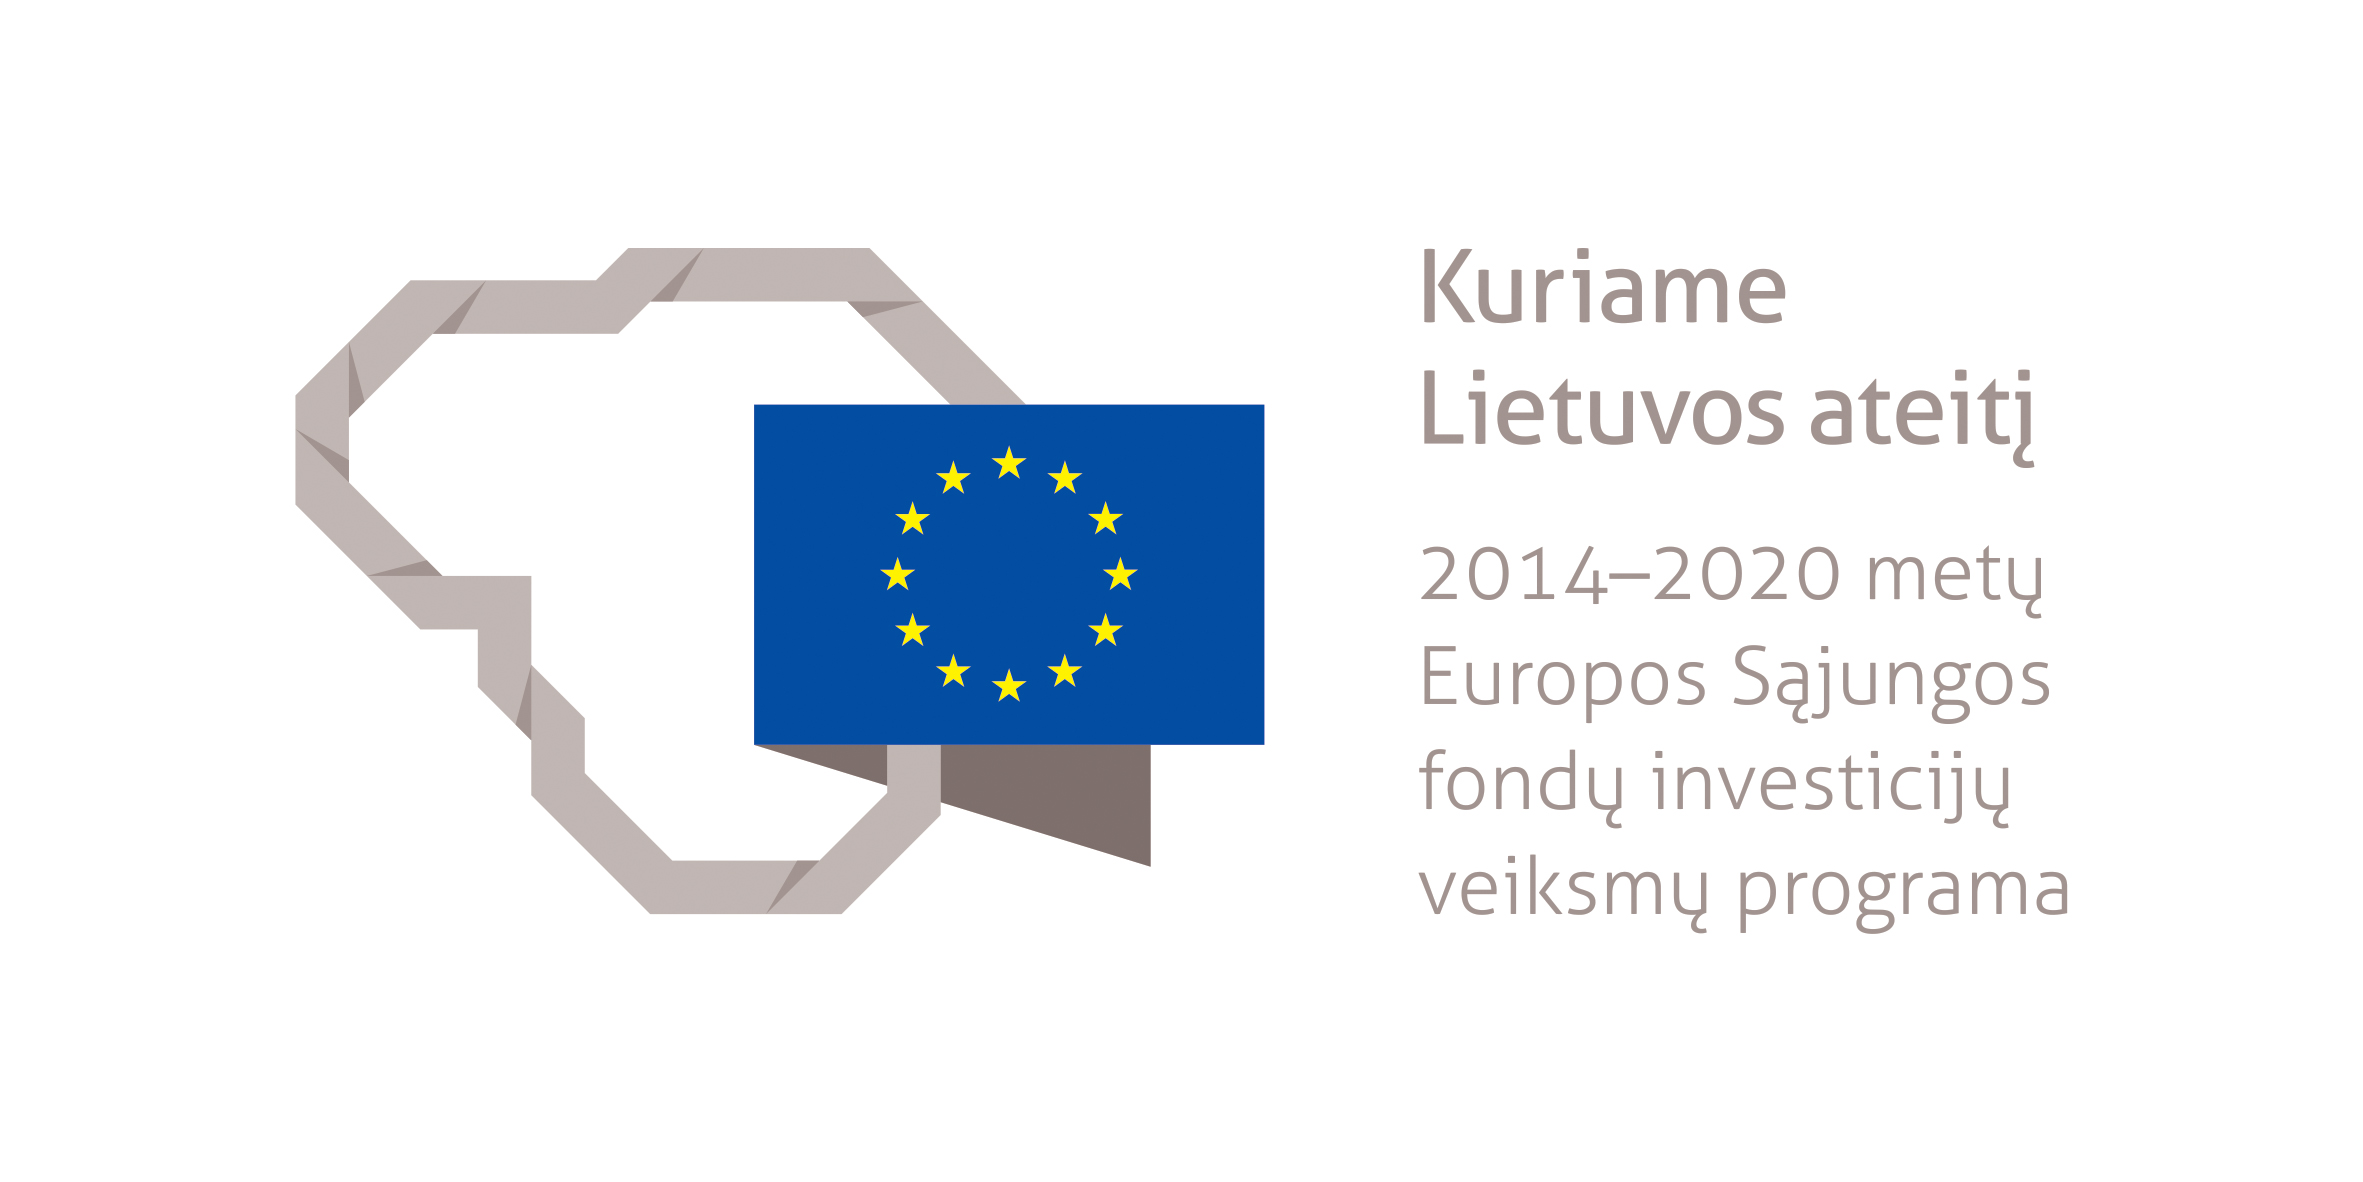 Logotipas Kuriame Lietuvos ateitį. 2014-2020 metų Europos Sąjungos fondų investicijų veiksmų programa